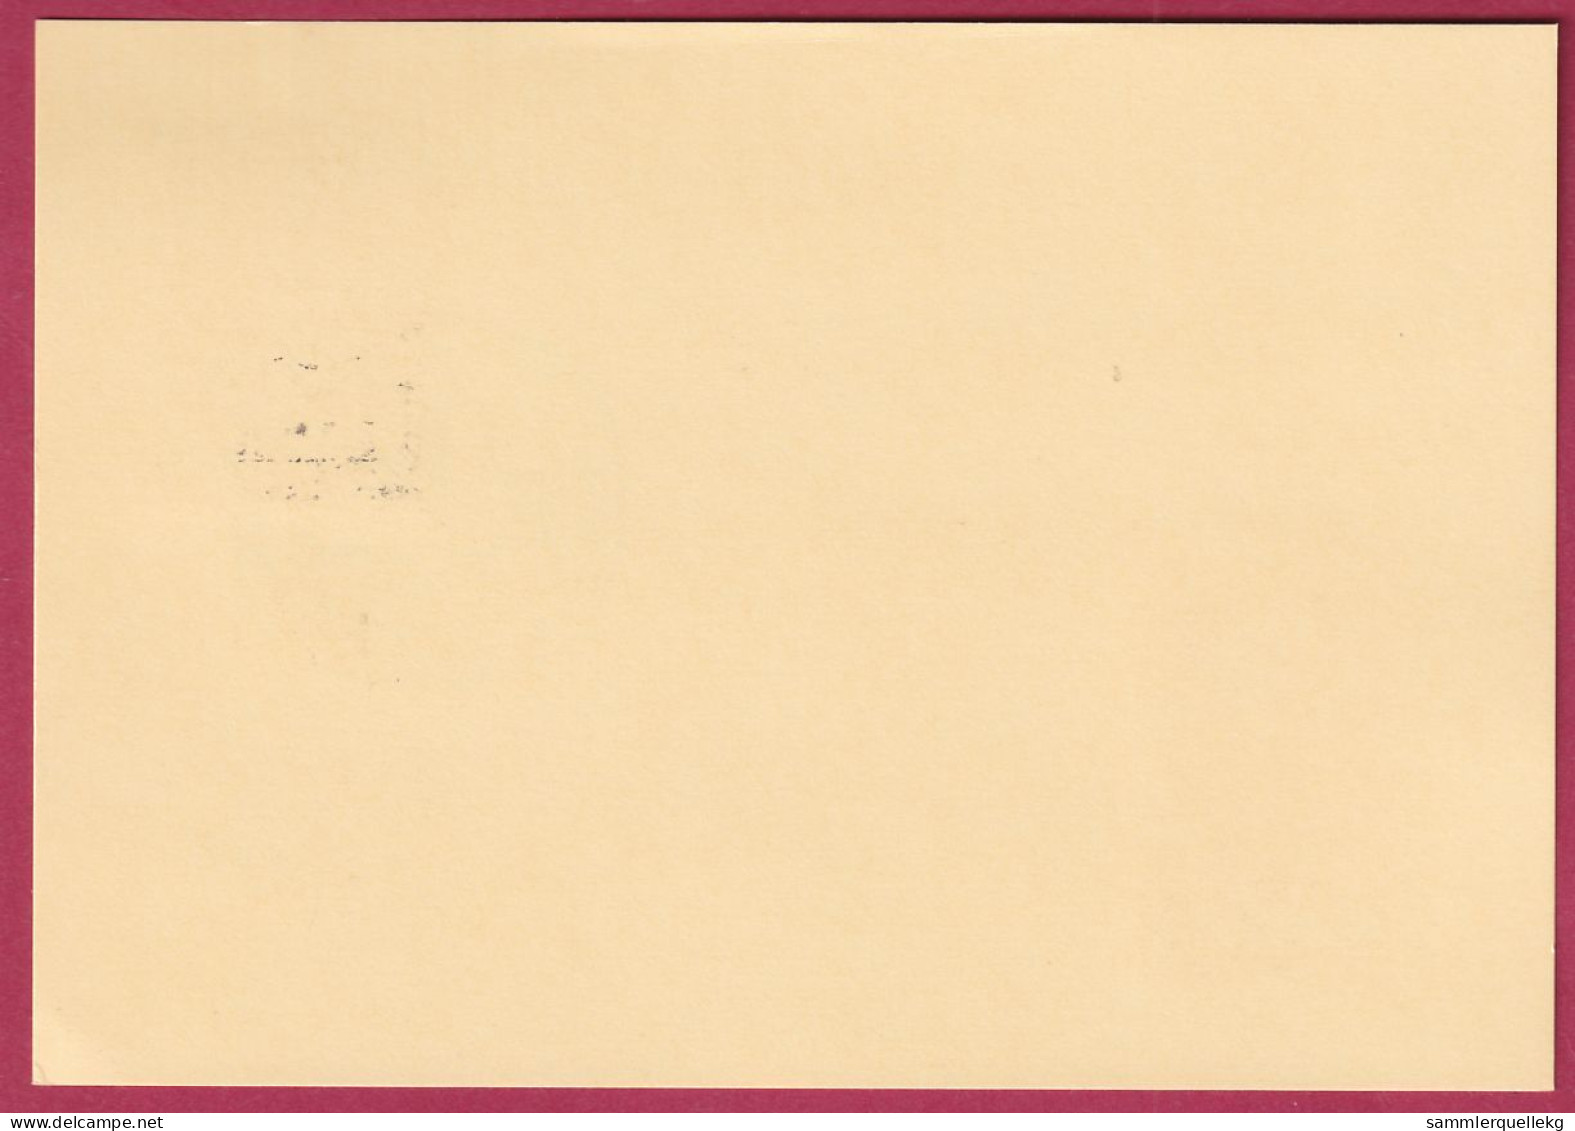 Österreich MNr. 860 Sonderstempel 26.9. 1865 Offenhausen - Dichterstein - Covers & Documents